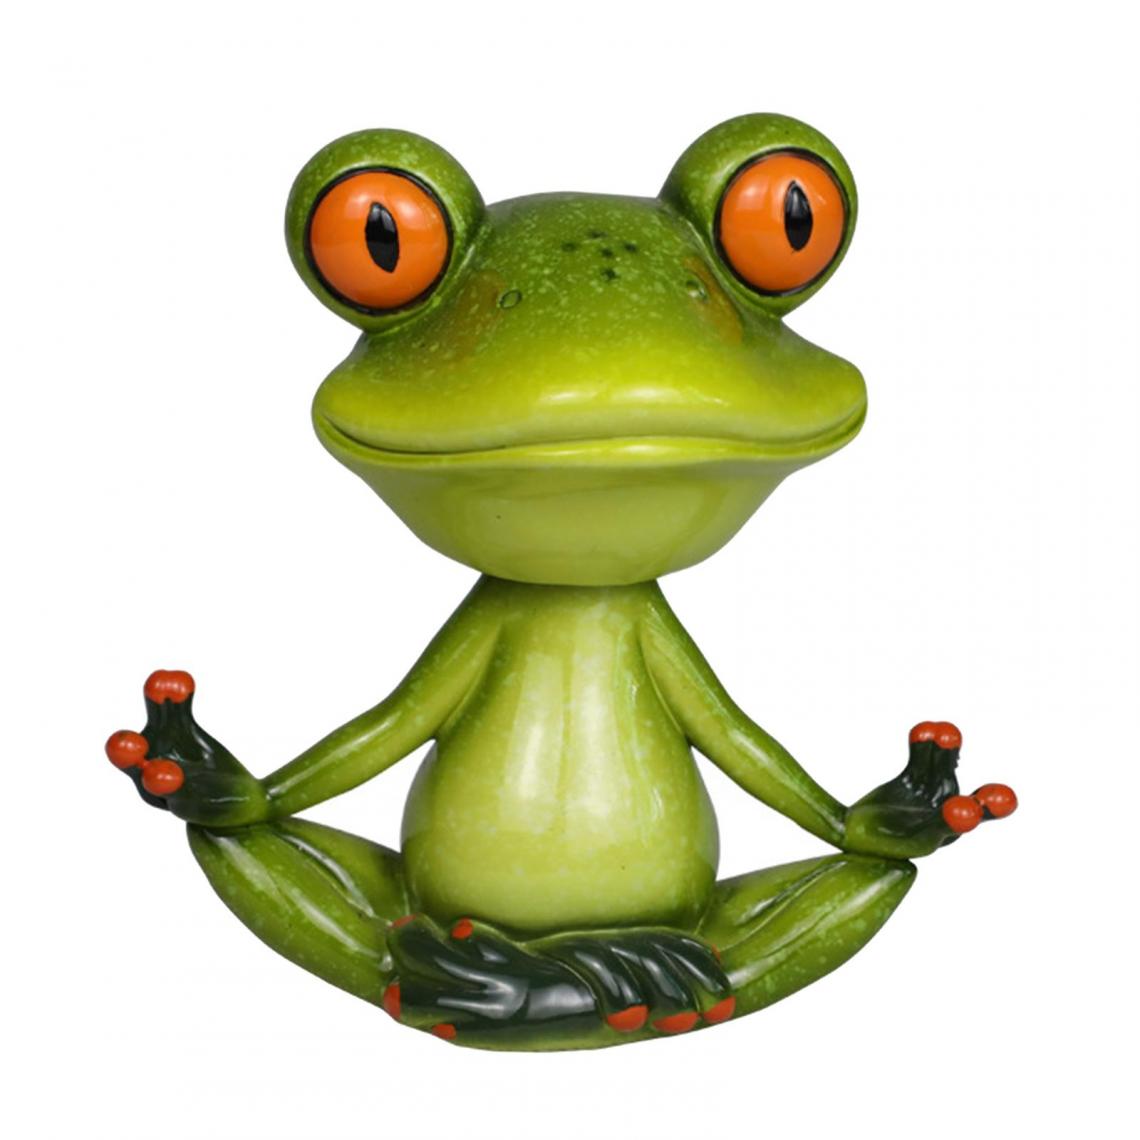 marque generique - S'asseoir dans la méditation Figurines de grenouilles Artisanat en résine - Statues